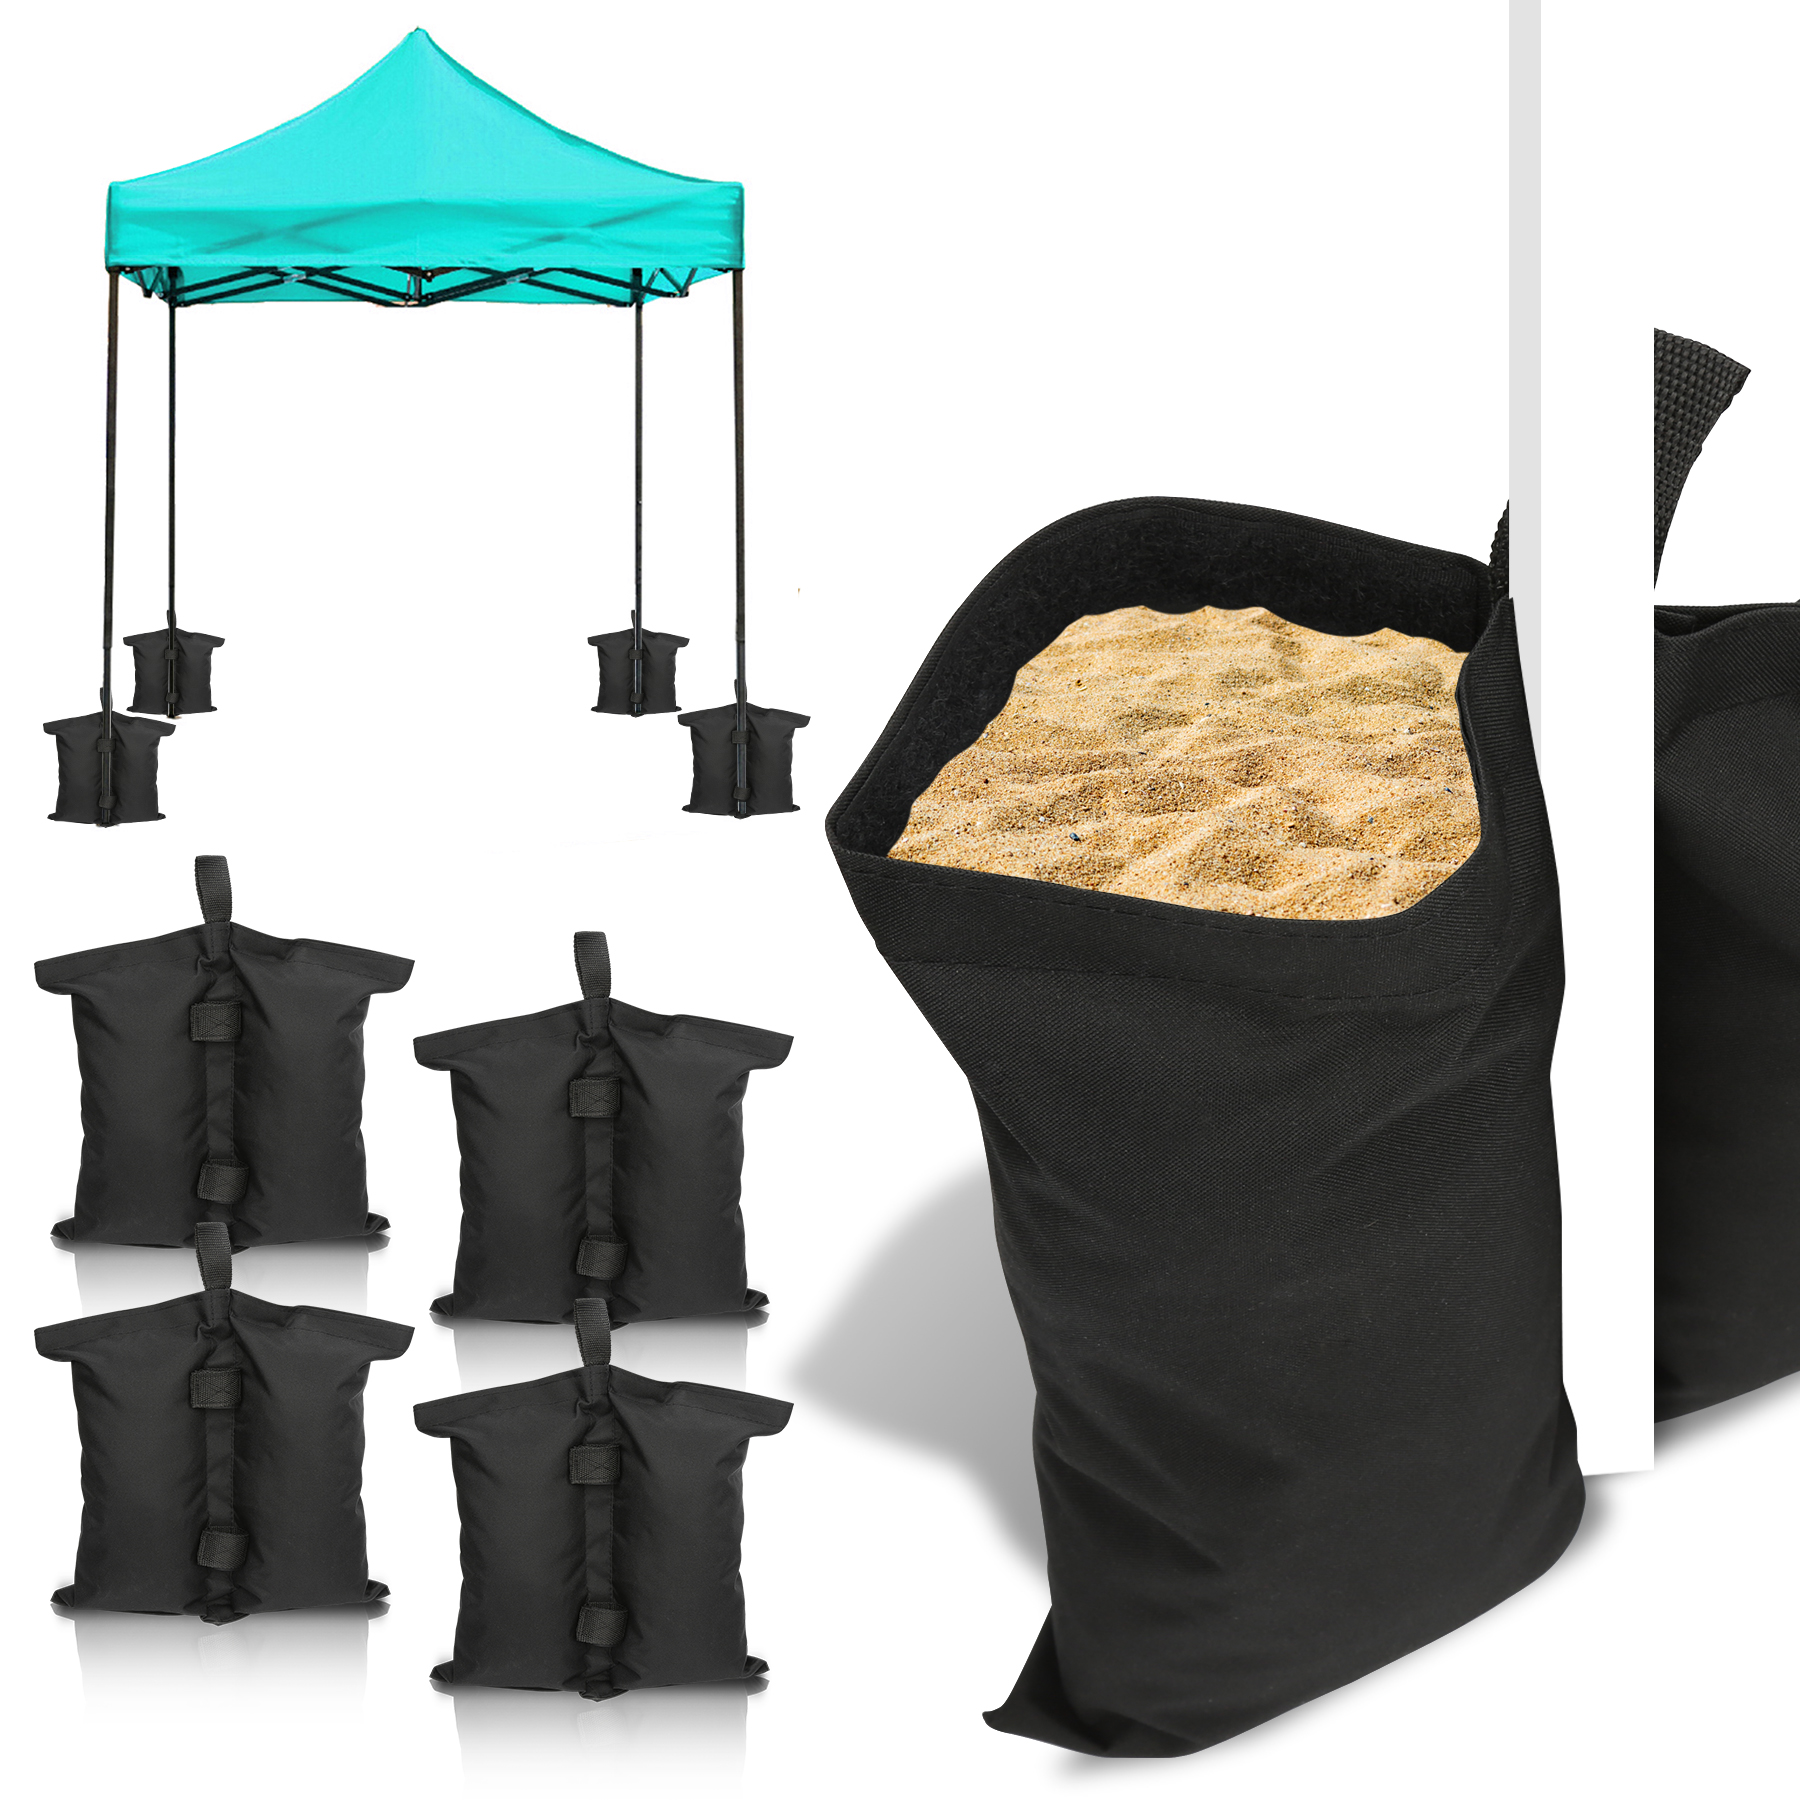 EMVANV 4 Stück Sandsack Zeltgewichte Pavillon Sandsäcke Gewichte Tasche Beingewichte für Pop-Up Baldachin Zelt Gewichte